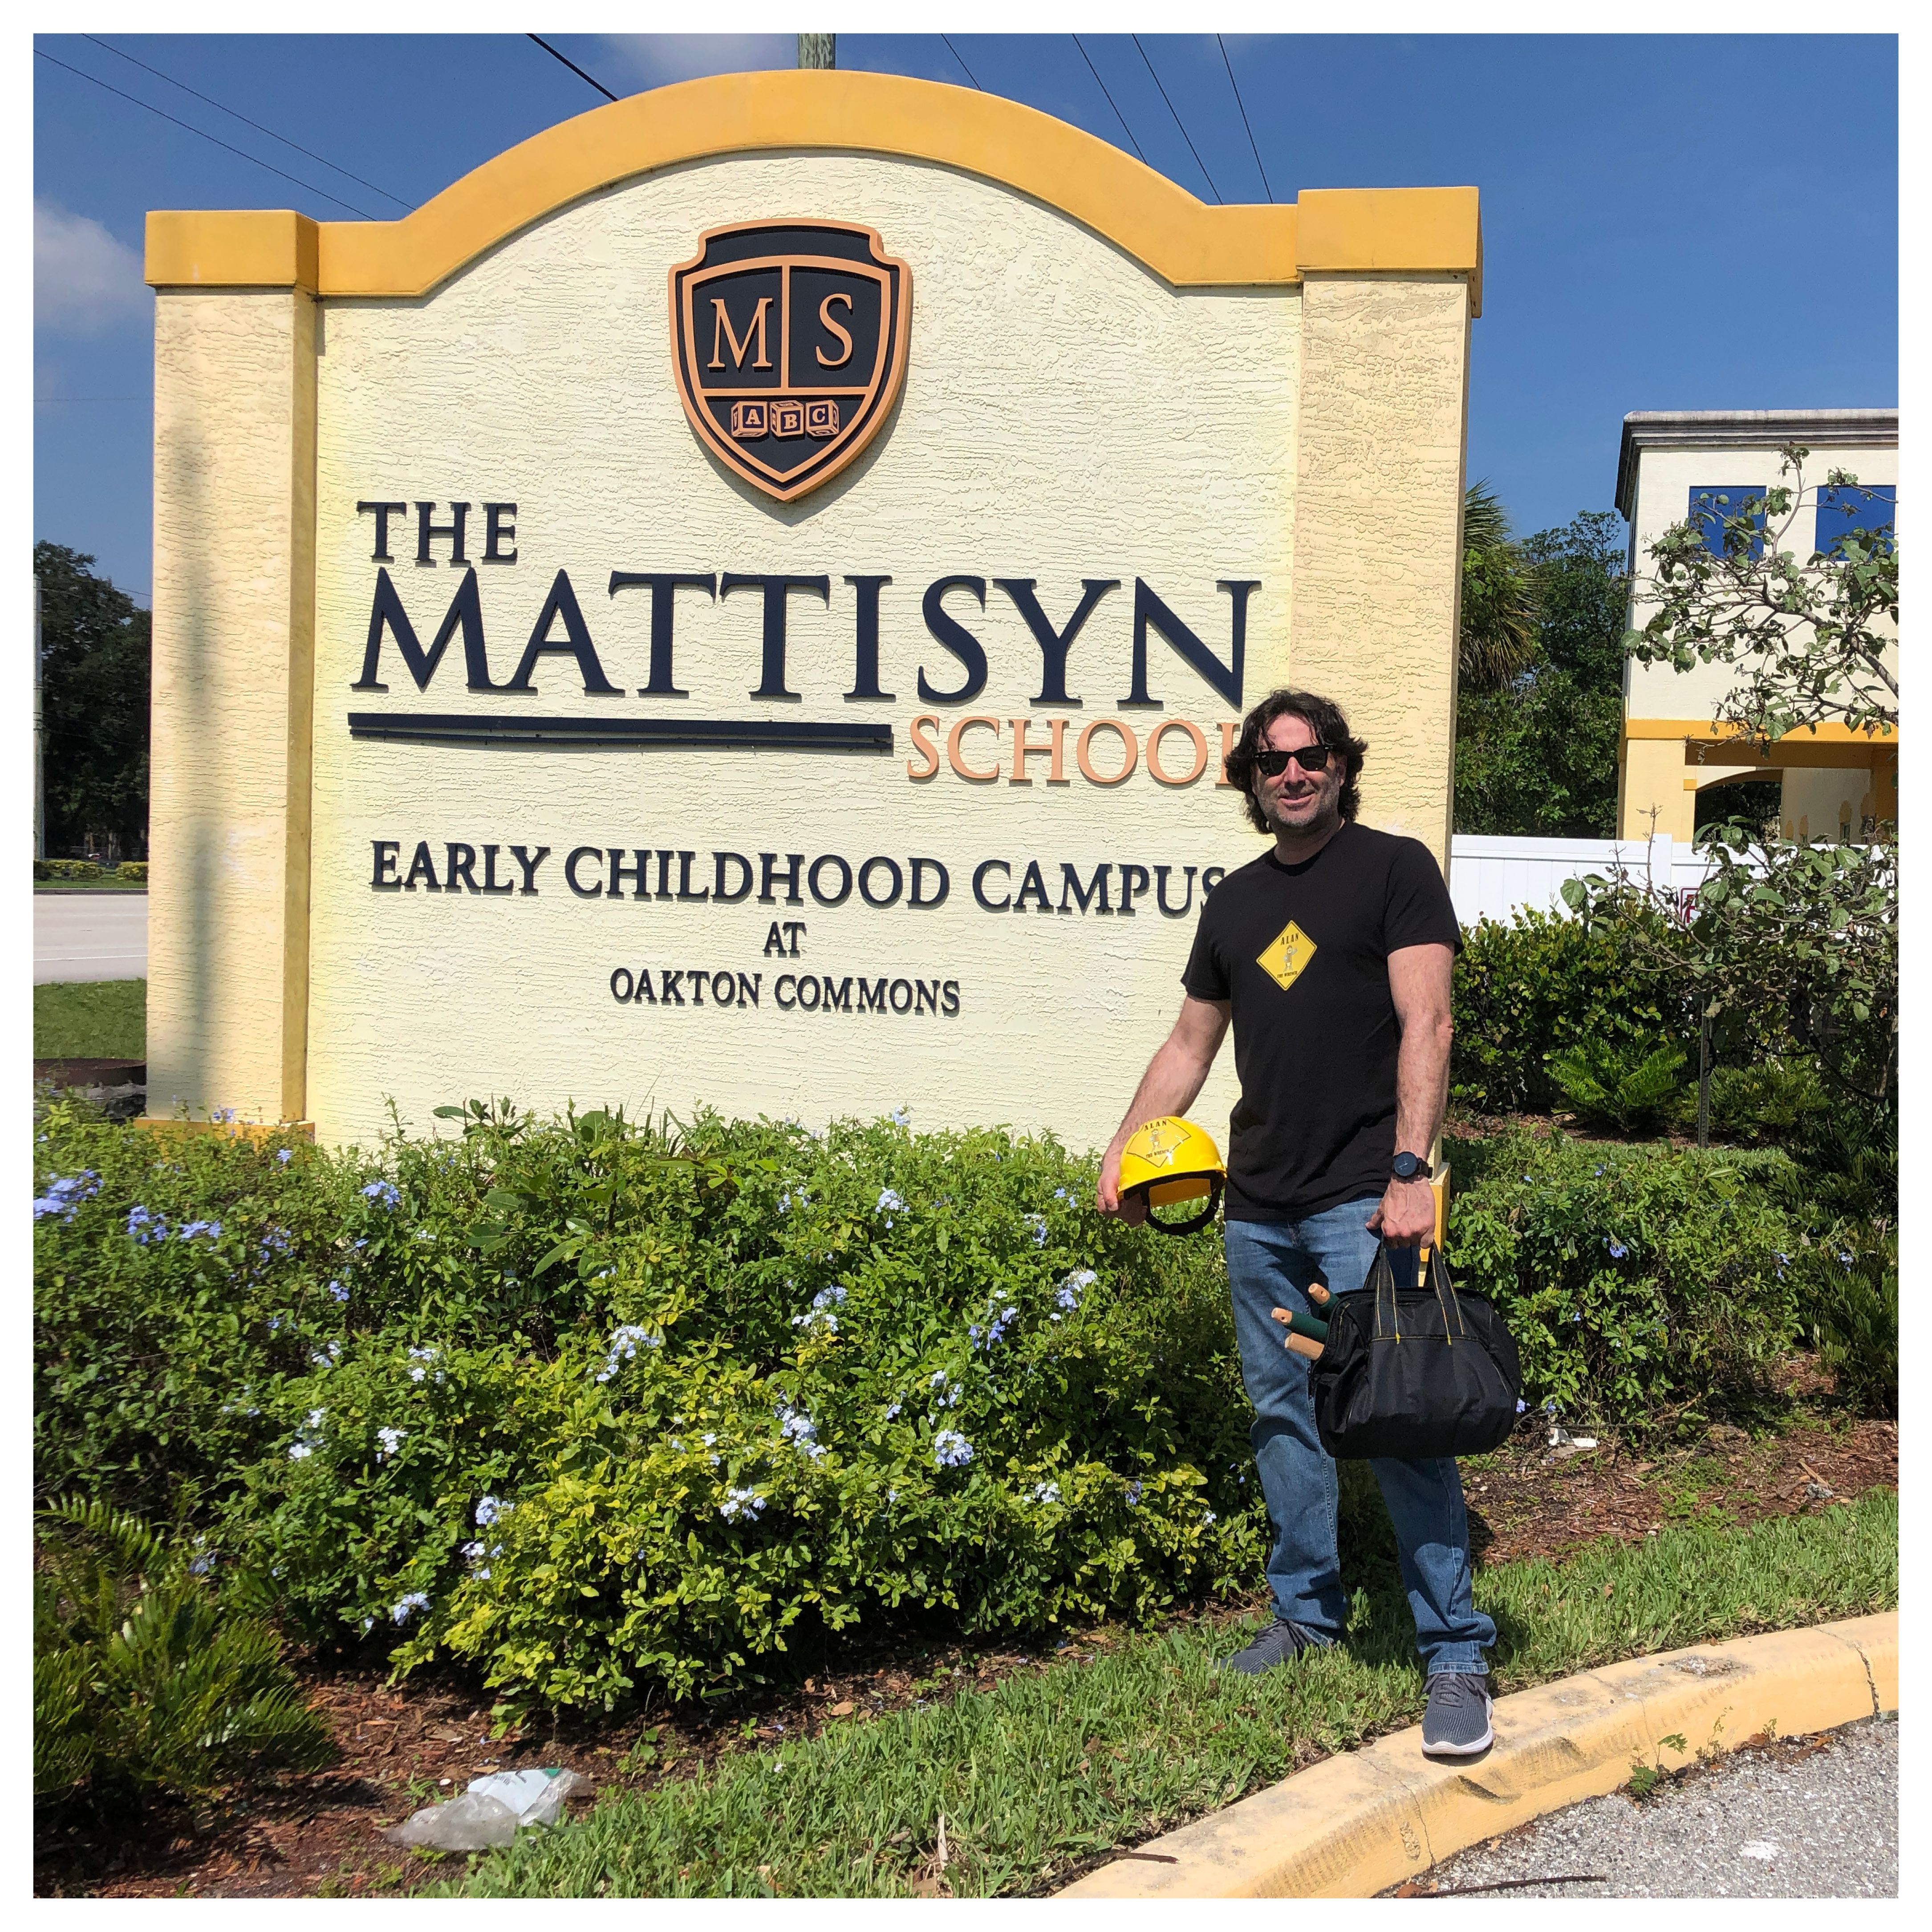 Mattisyn School – West Palm Beach, FL